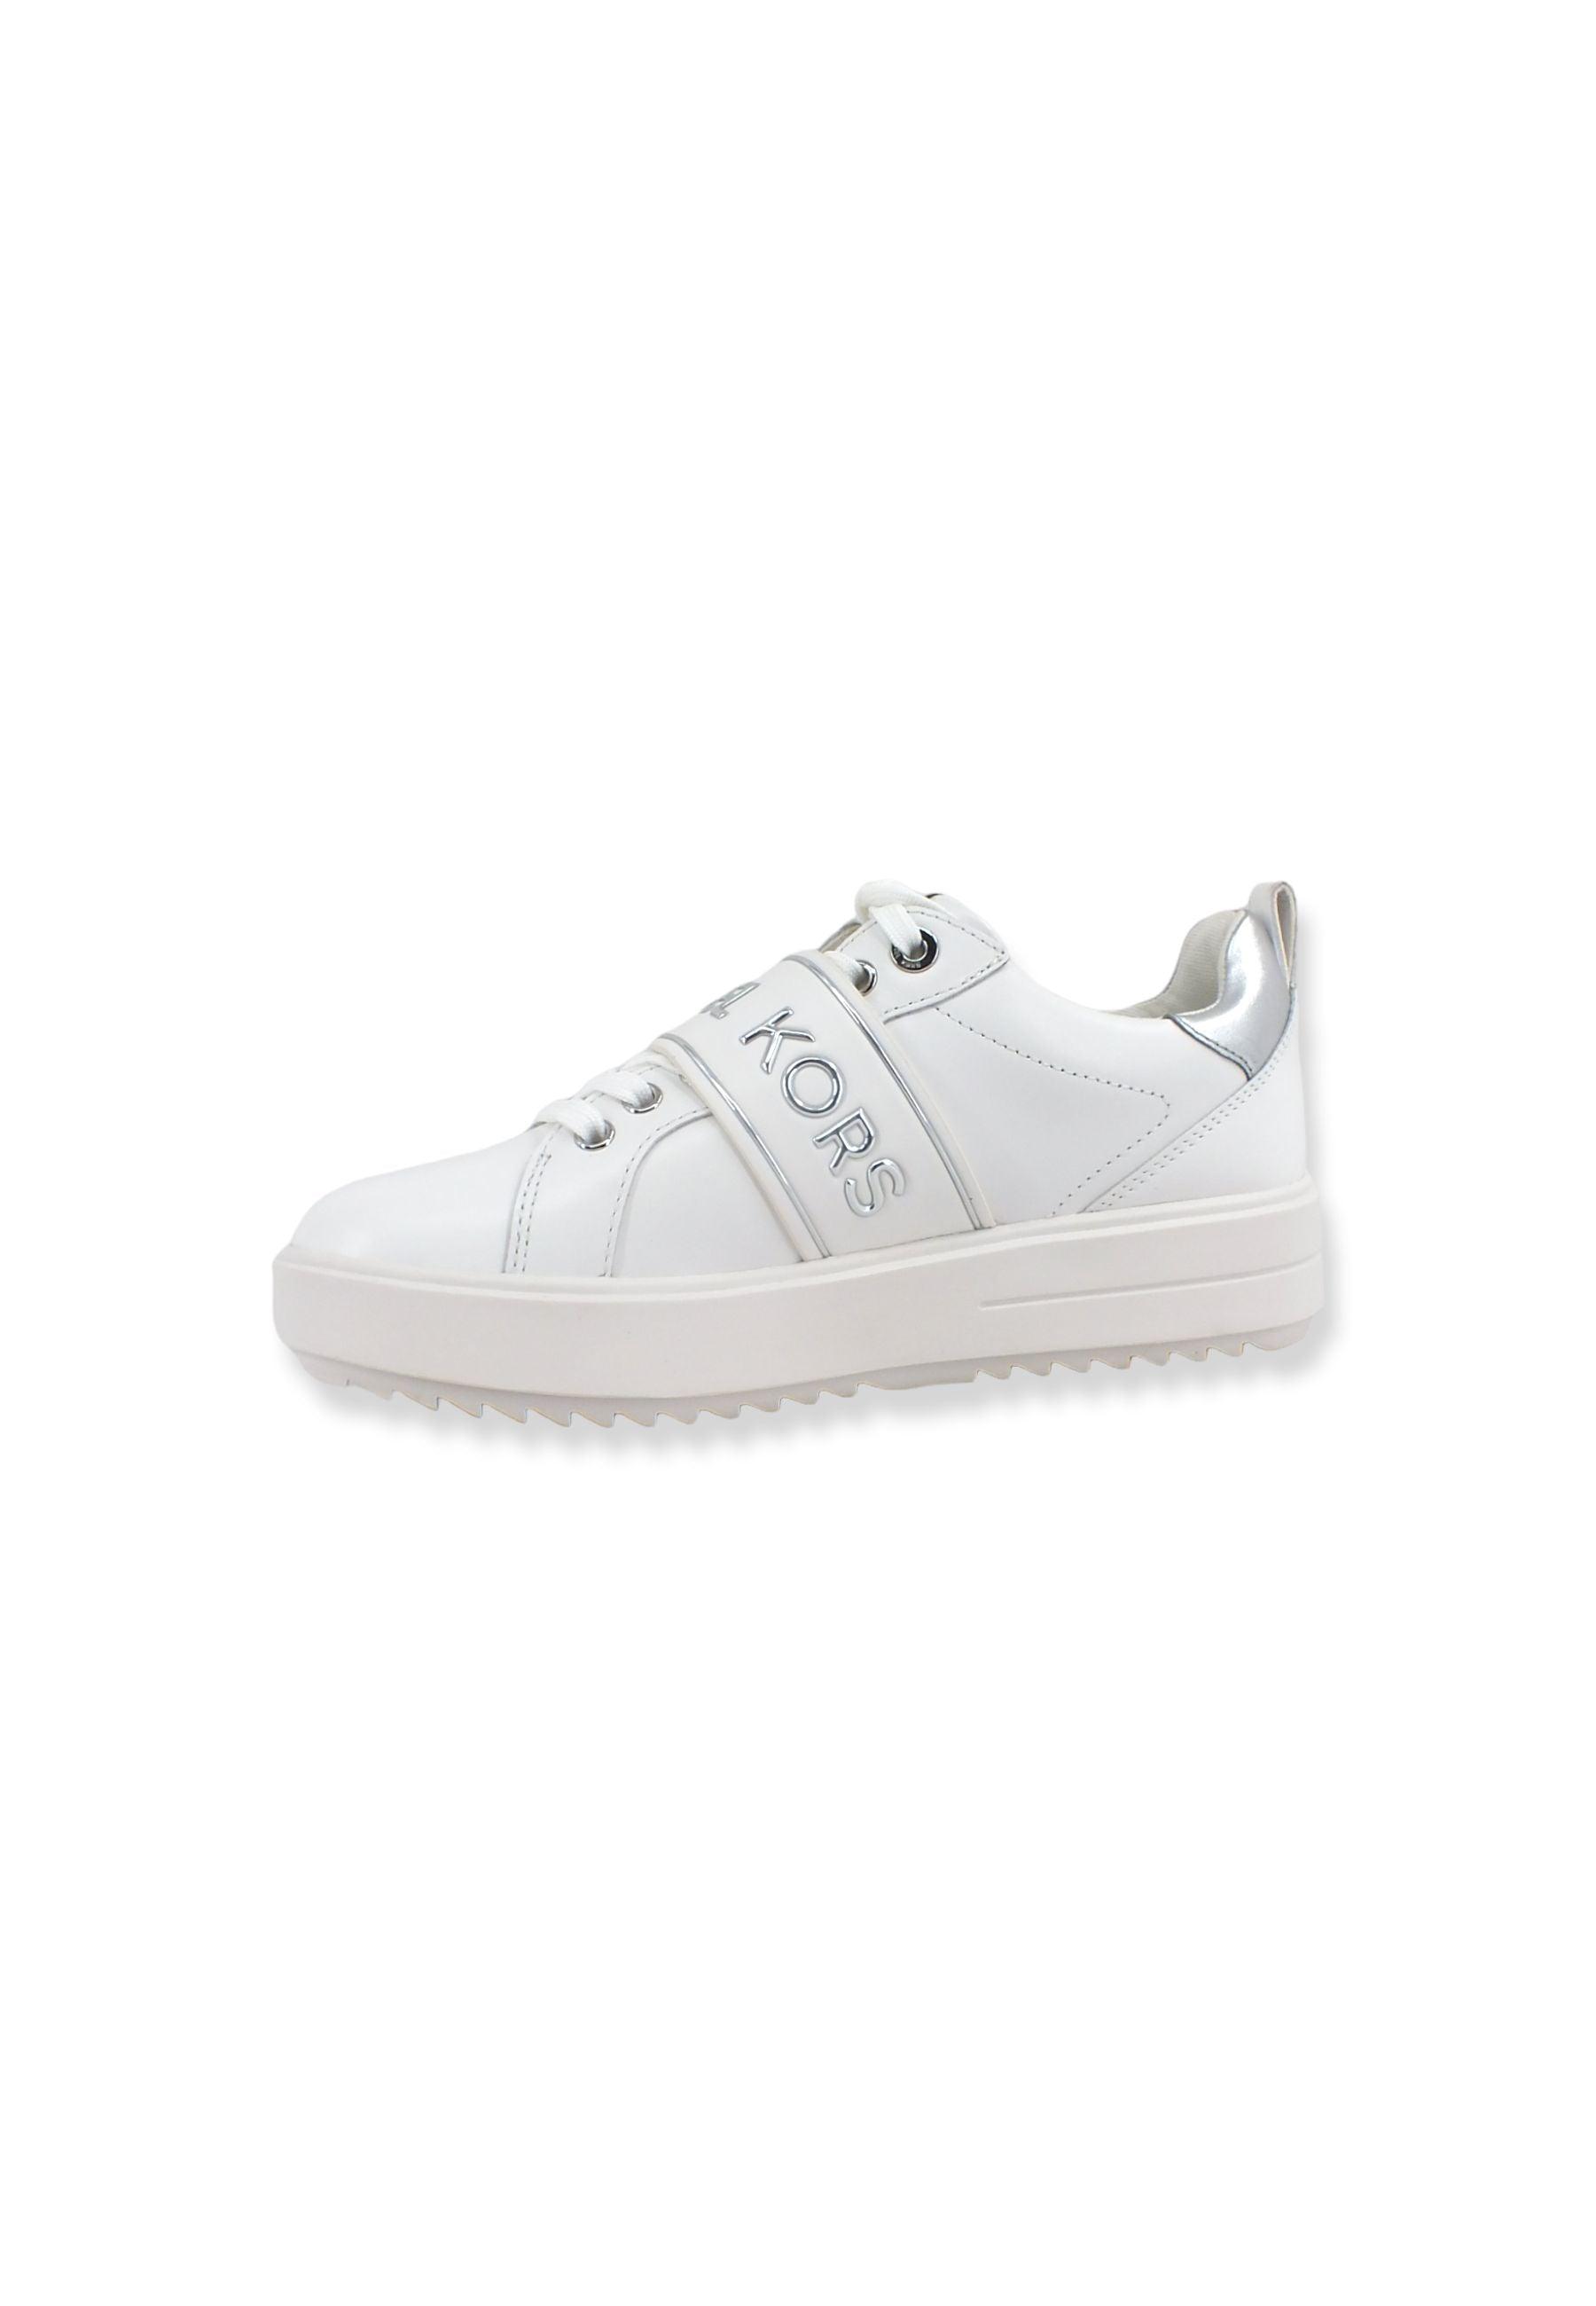 MICHAEL KORS Emmett Strap Sneaker Donna Optic White 43T2ETFS4L - Sandrini Calzature e Abbigliamento